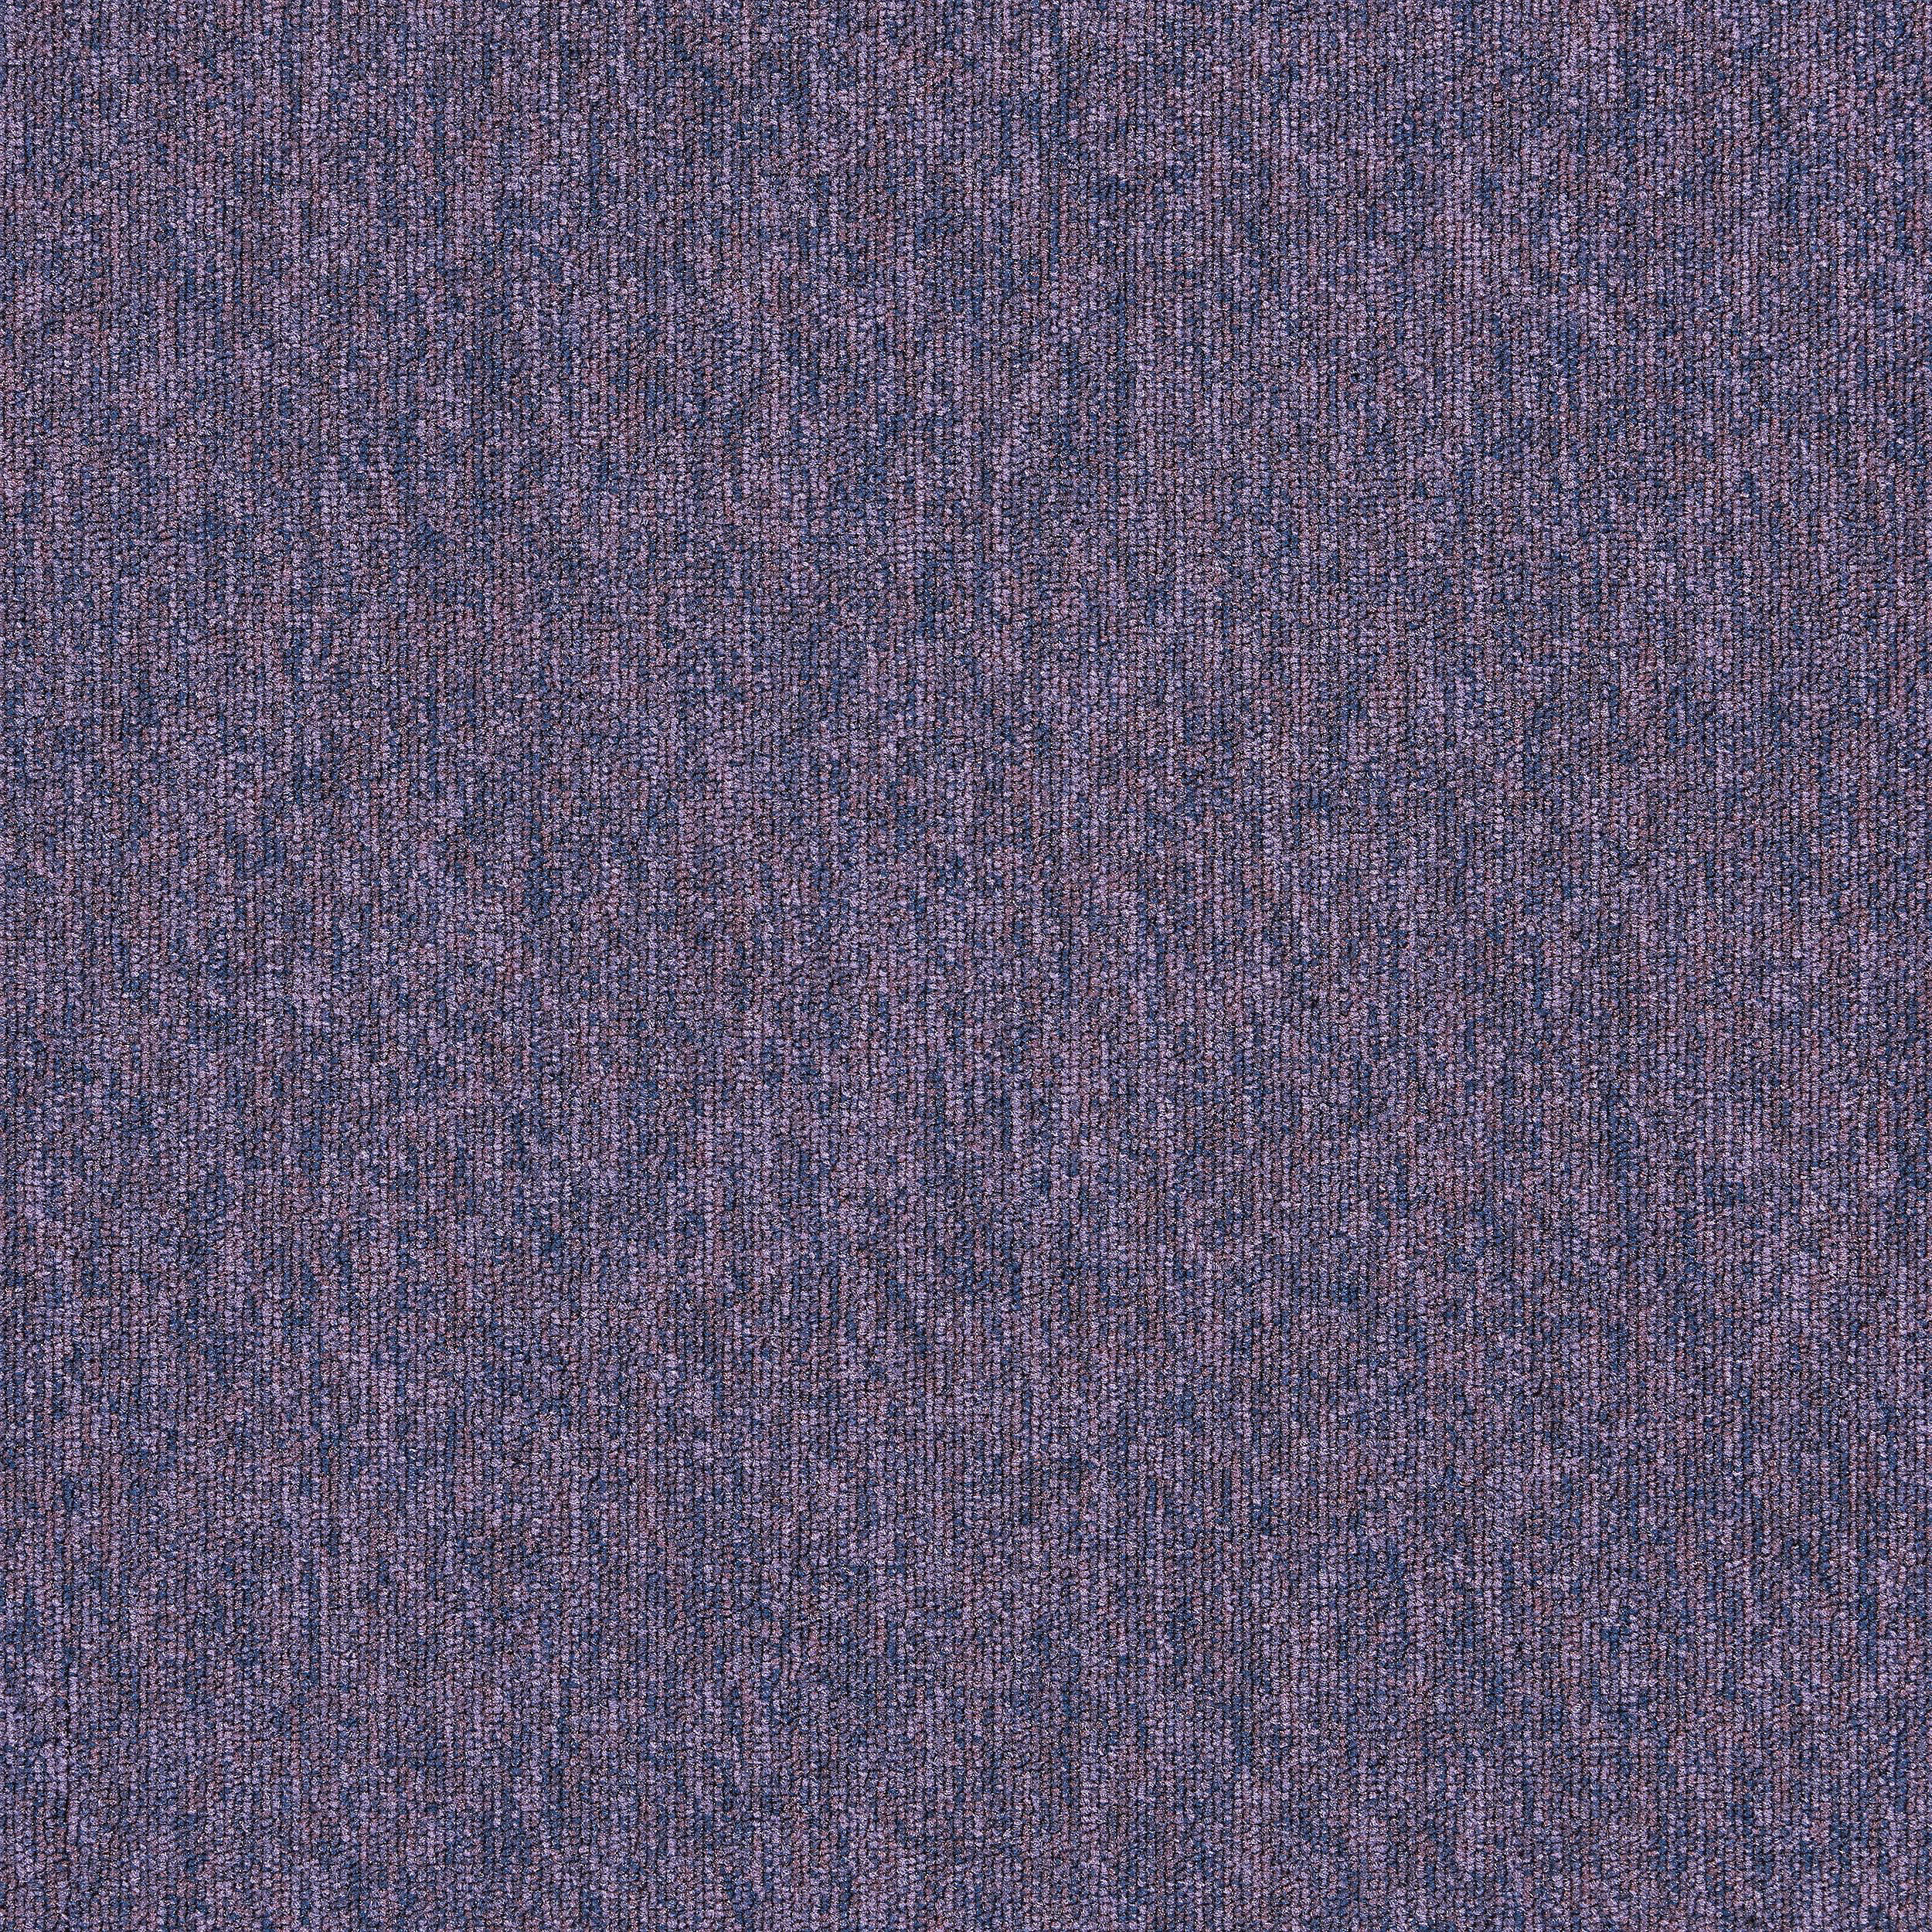 Employ Loop Carpet Tile In Lavender número de imagen 18